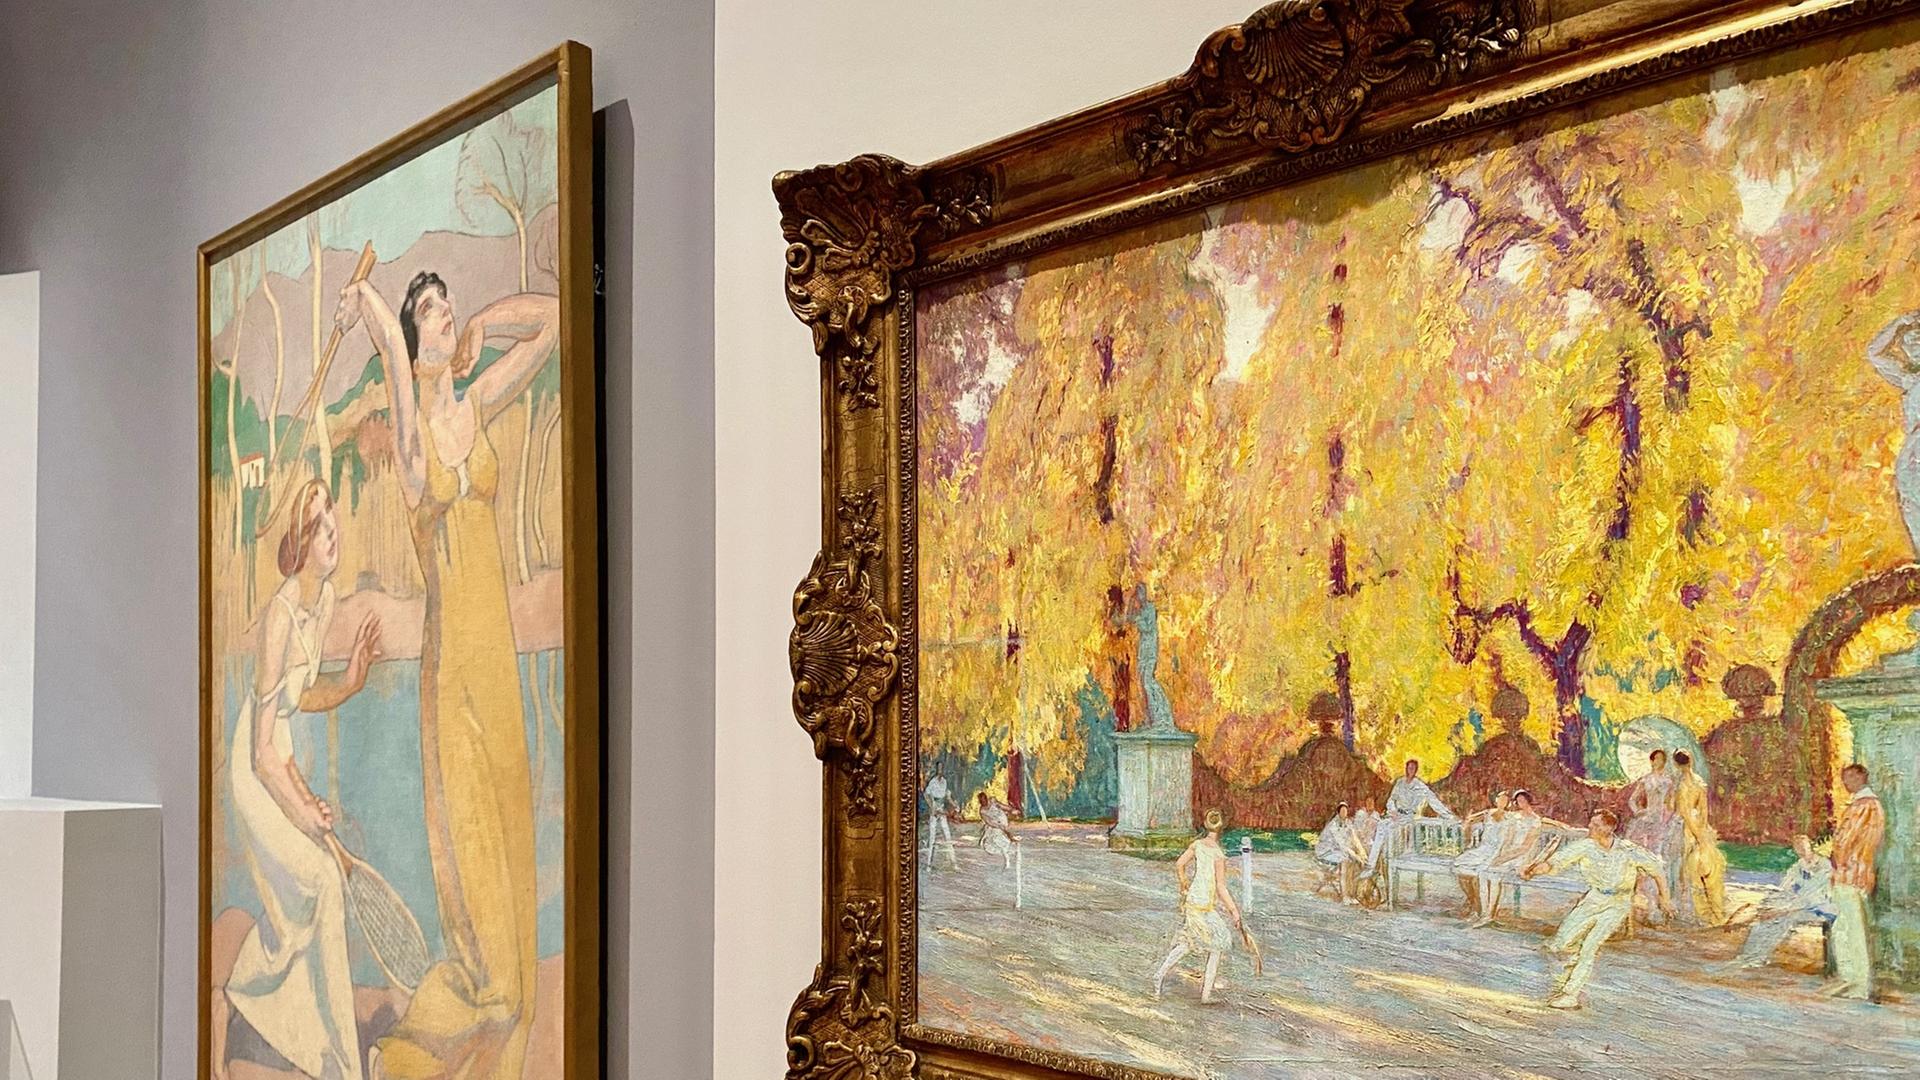 Zwei Gemälde hängen in einer Gallerie. Sie zeigen Menschen beim Tennis spielen in der Sonne. Der vordere Bilderrahmen ist massiv und gold, der hintere ist schlicht gehalten.